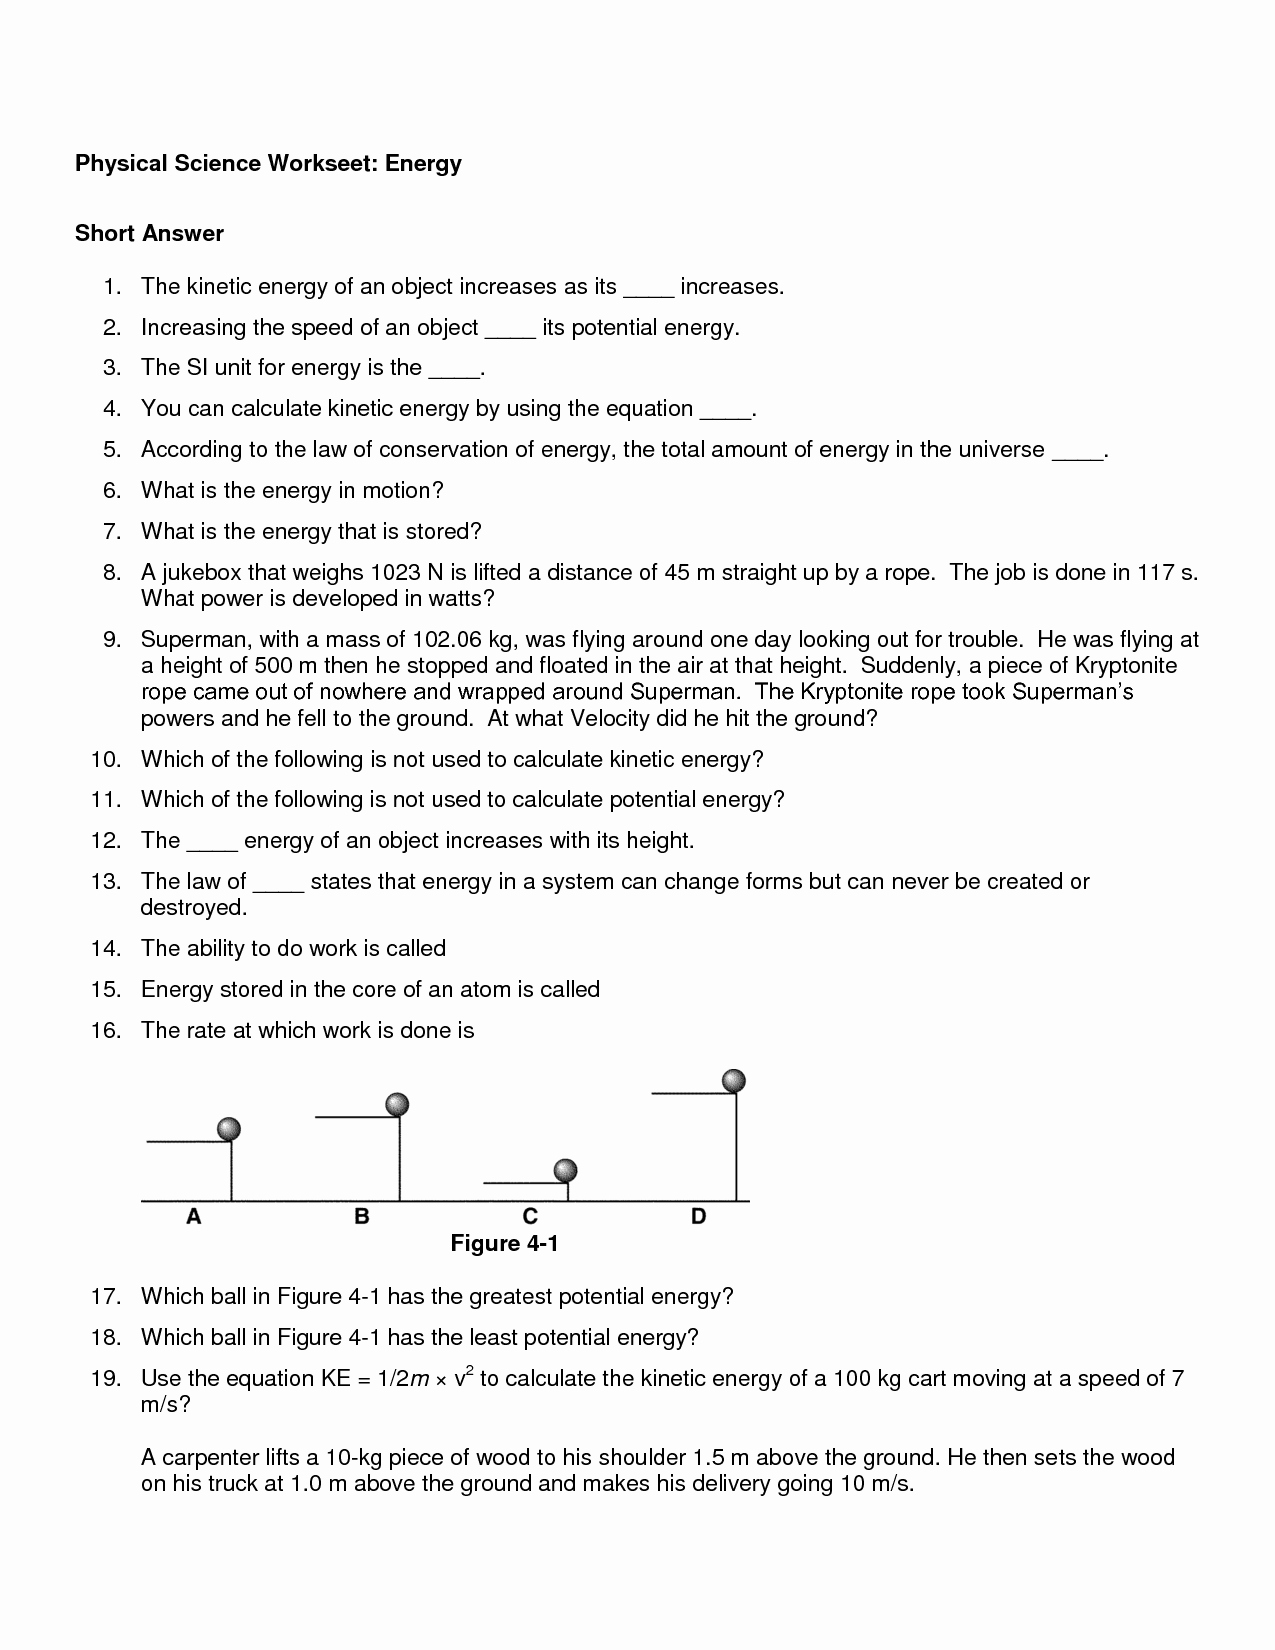 Momentum Worksheet Answer Key Awesome Energy Worksheet Category Page 1 Worksheeto